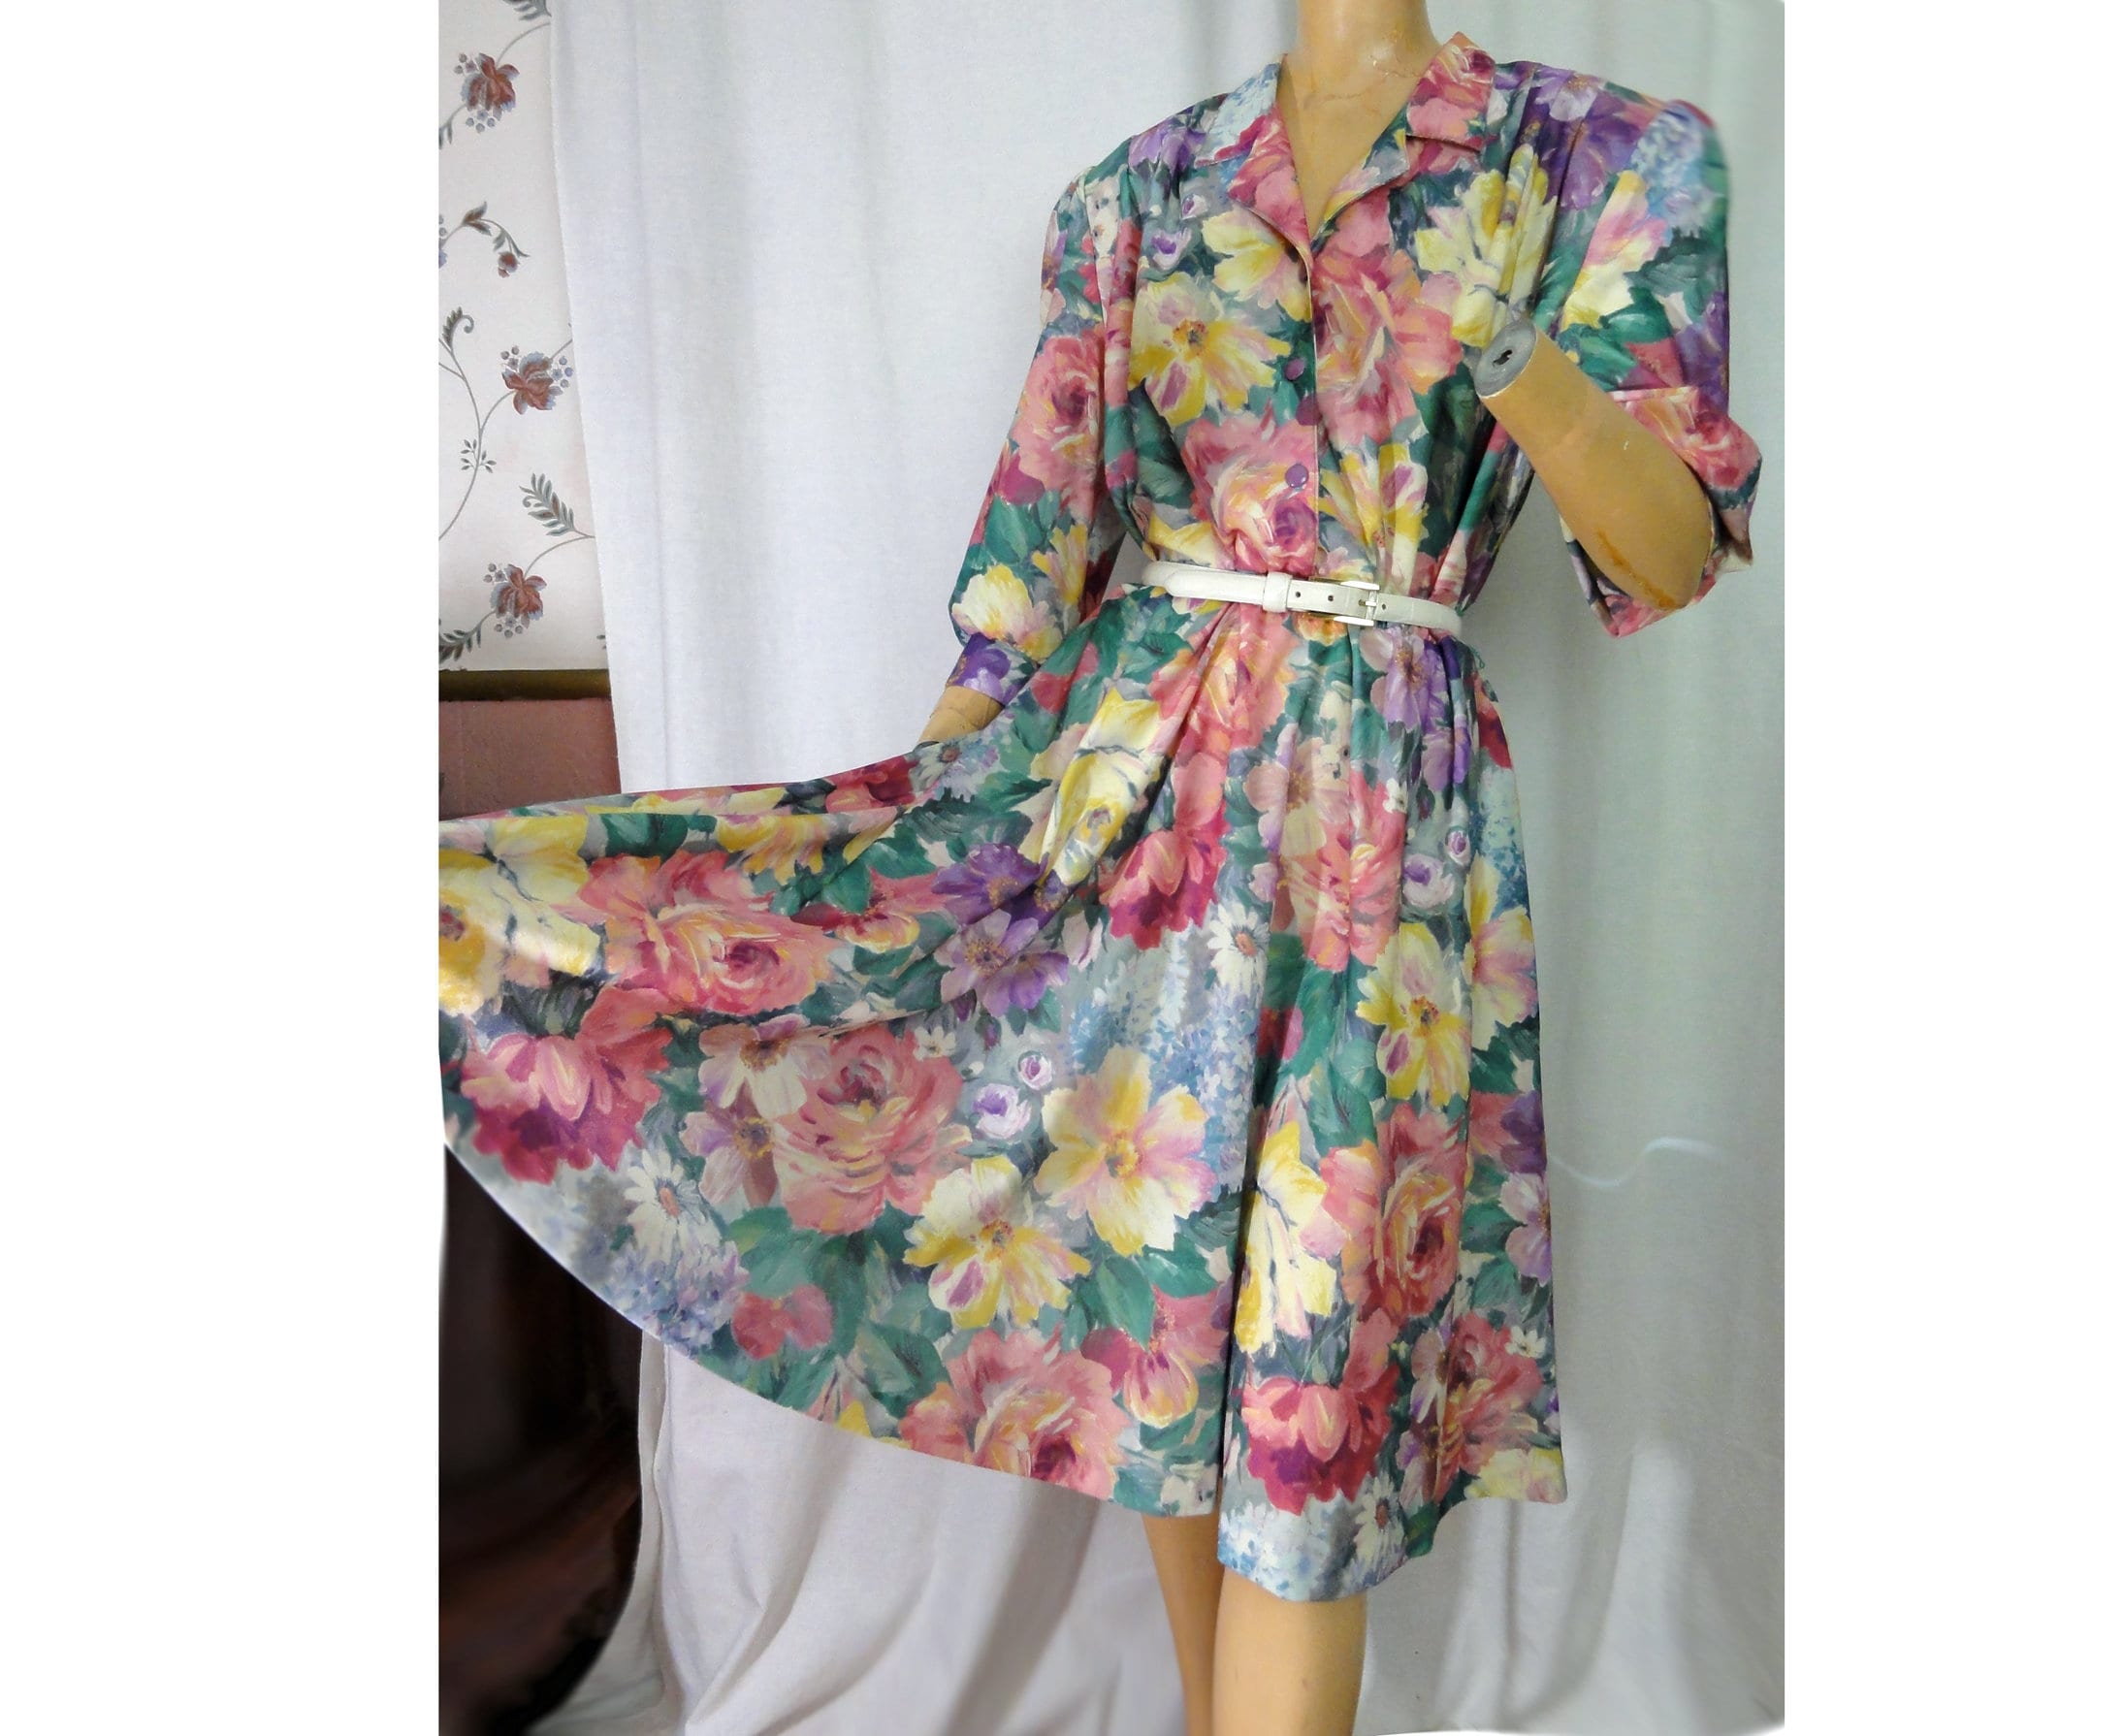 Floral Print 1980s Shirtwaist Dress Vintage Party Frock Size 14 Petite ...